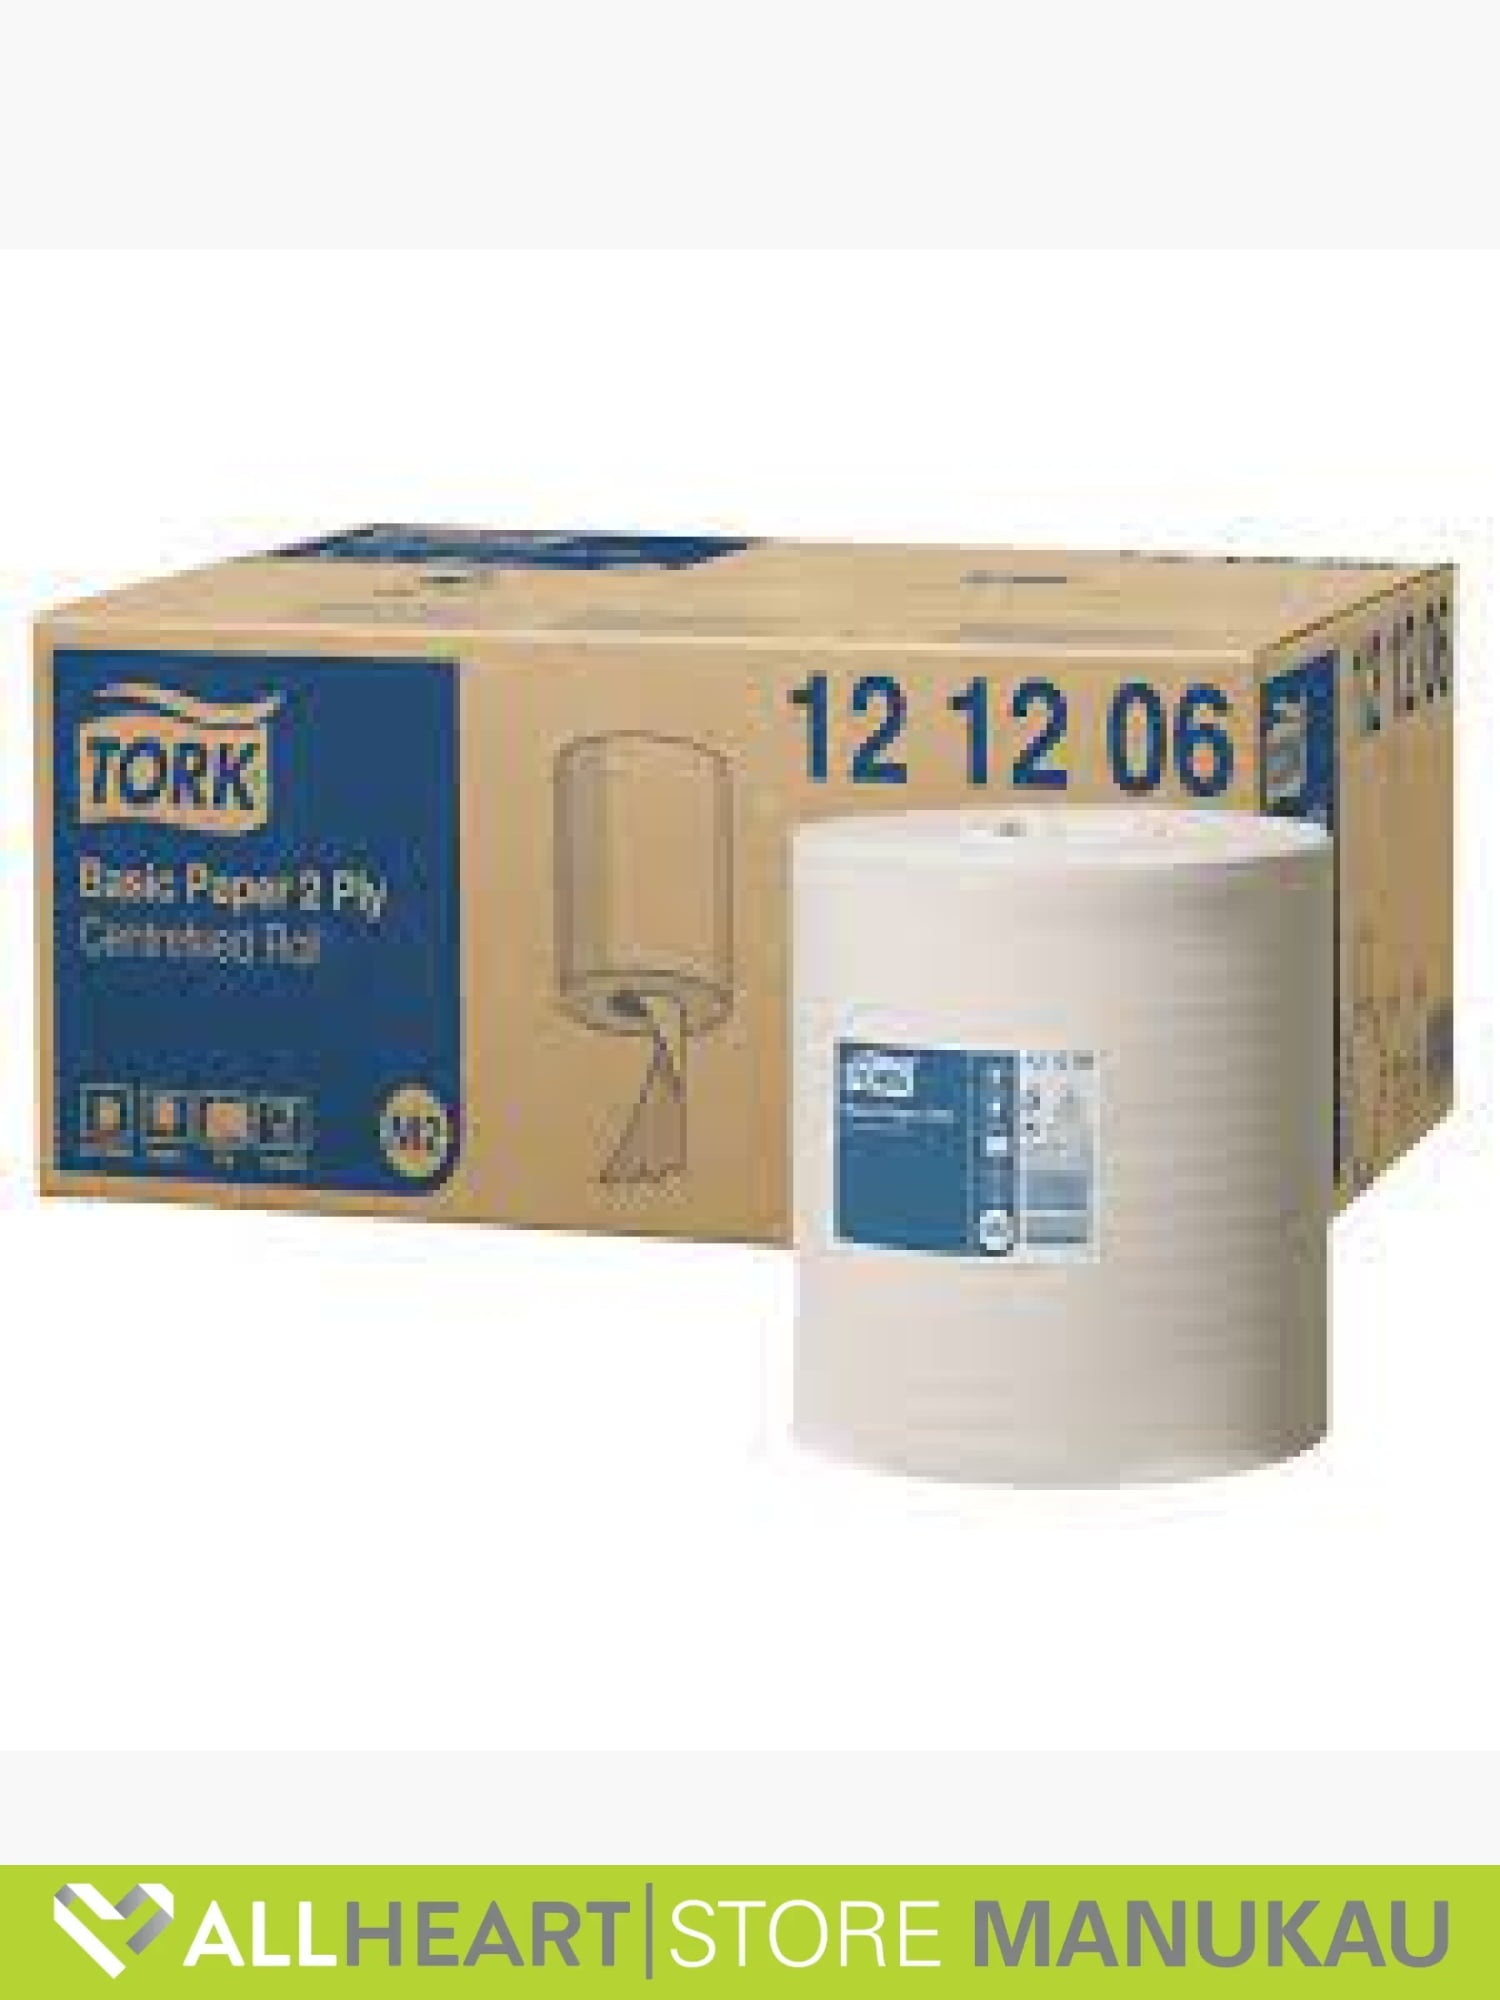 Tork - Basic Paper -12 12 06